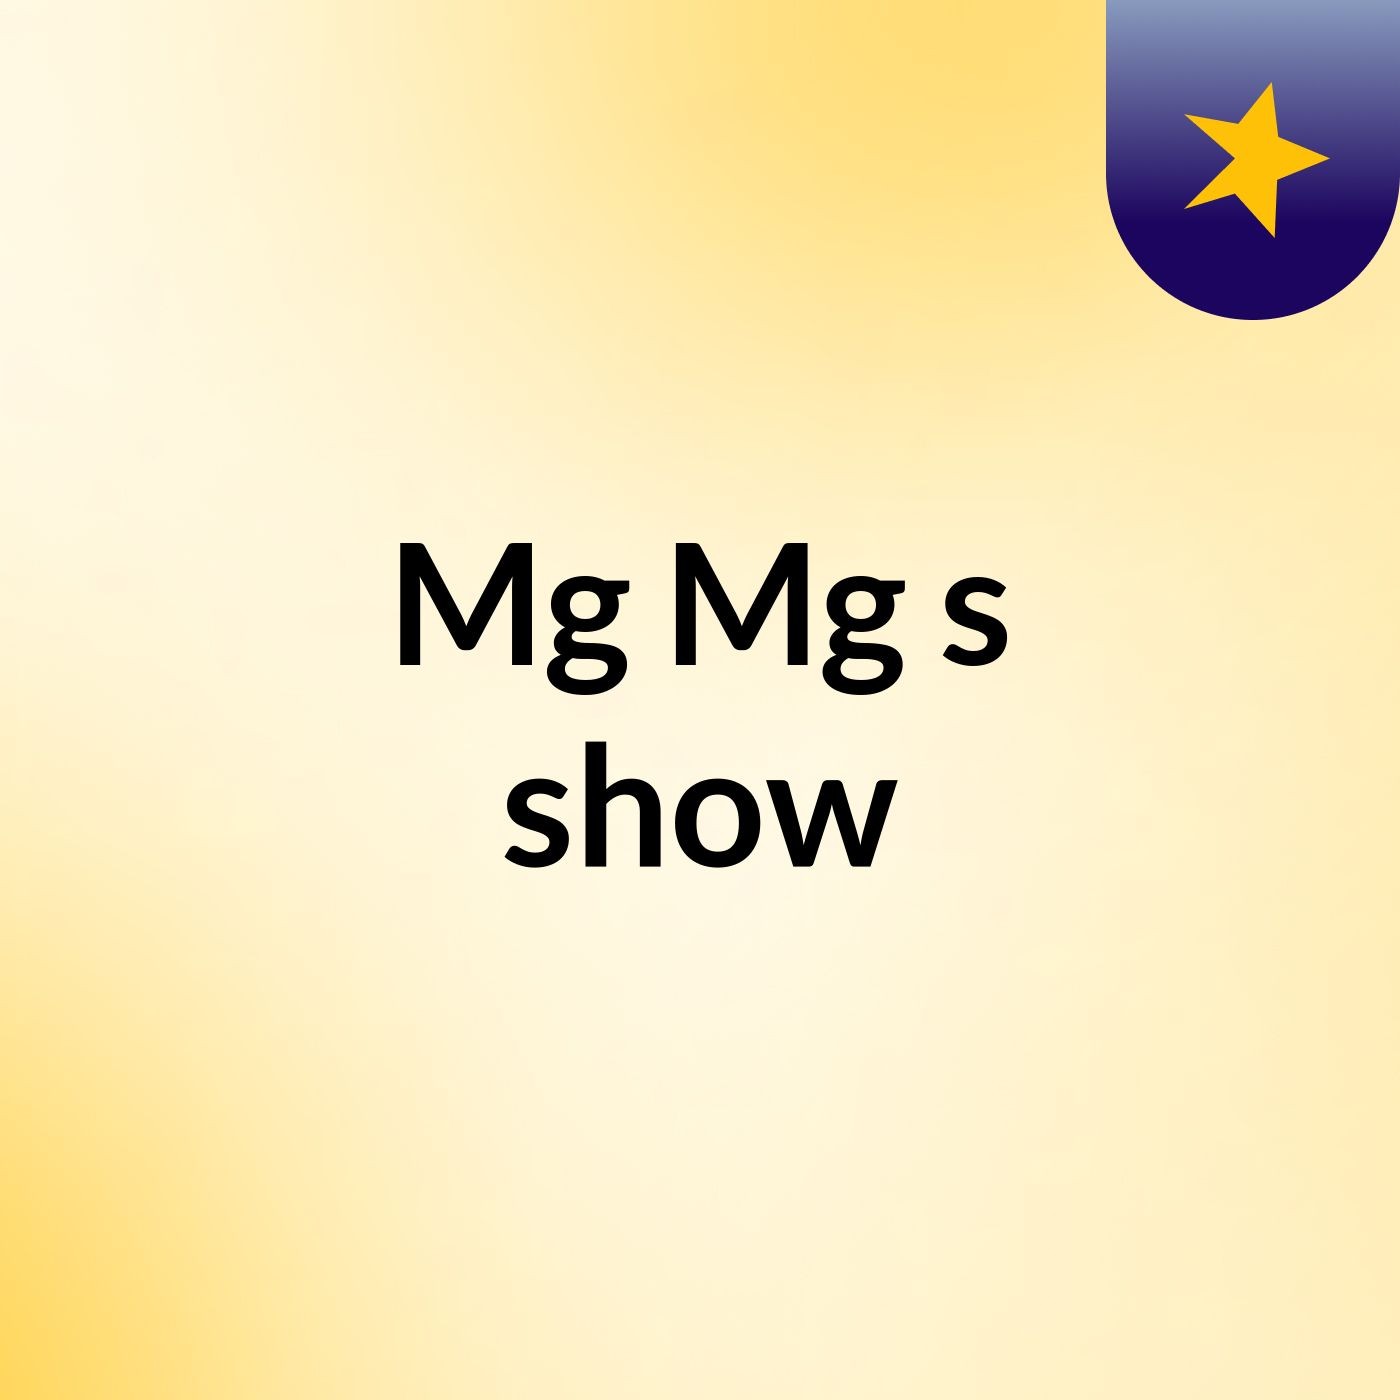 Mg Mg's show